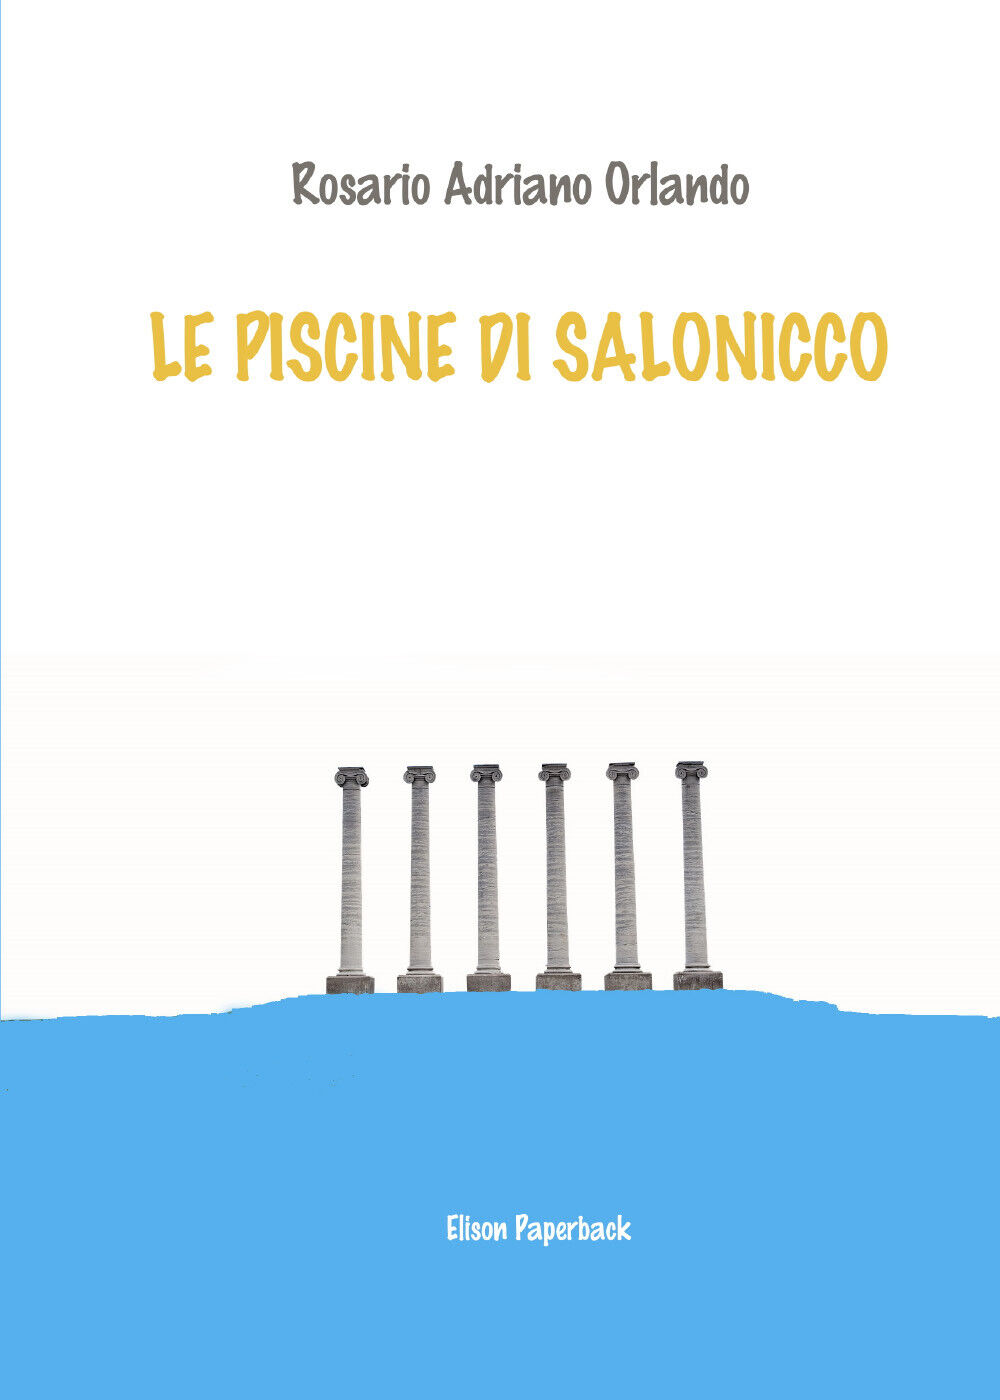 Le piscine di Salonicco di Rosario Adriano Orlando,  2021,  Elison Paperback